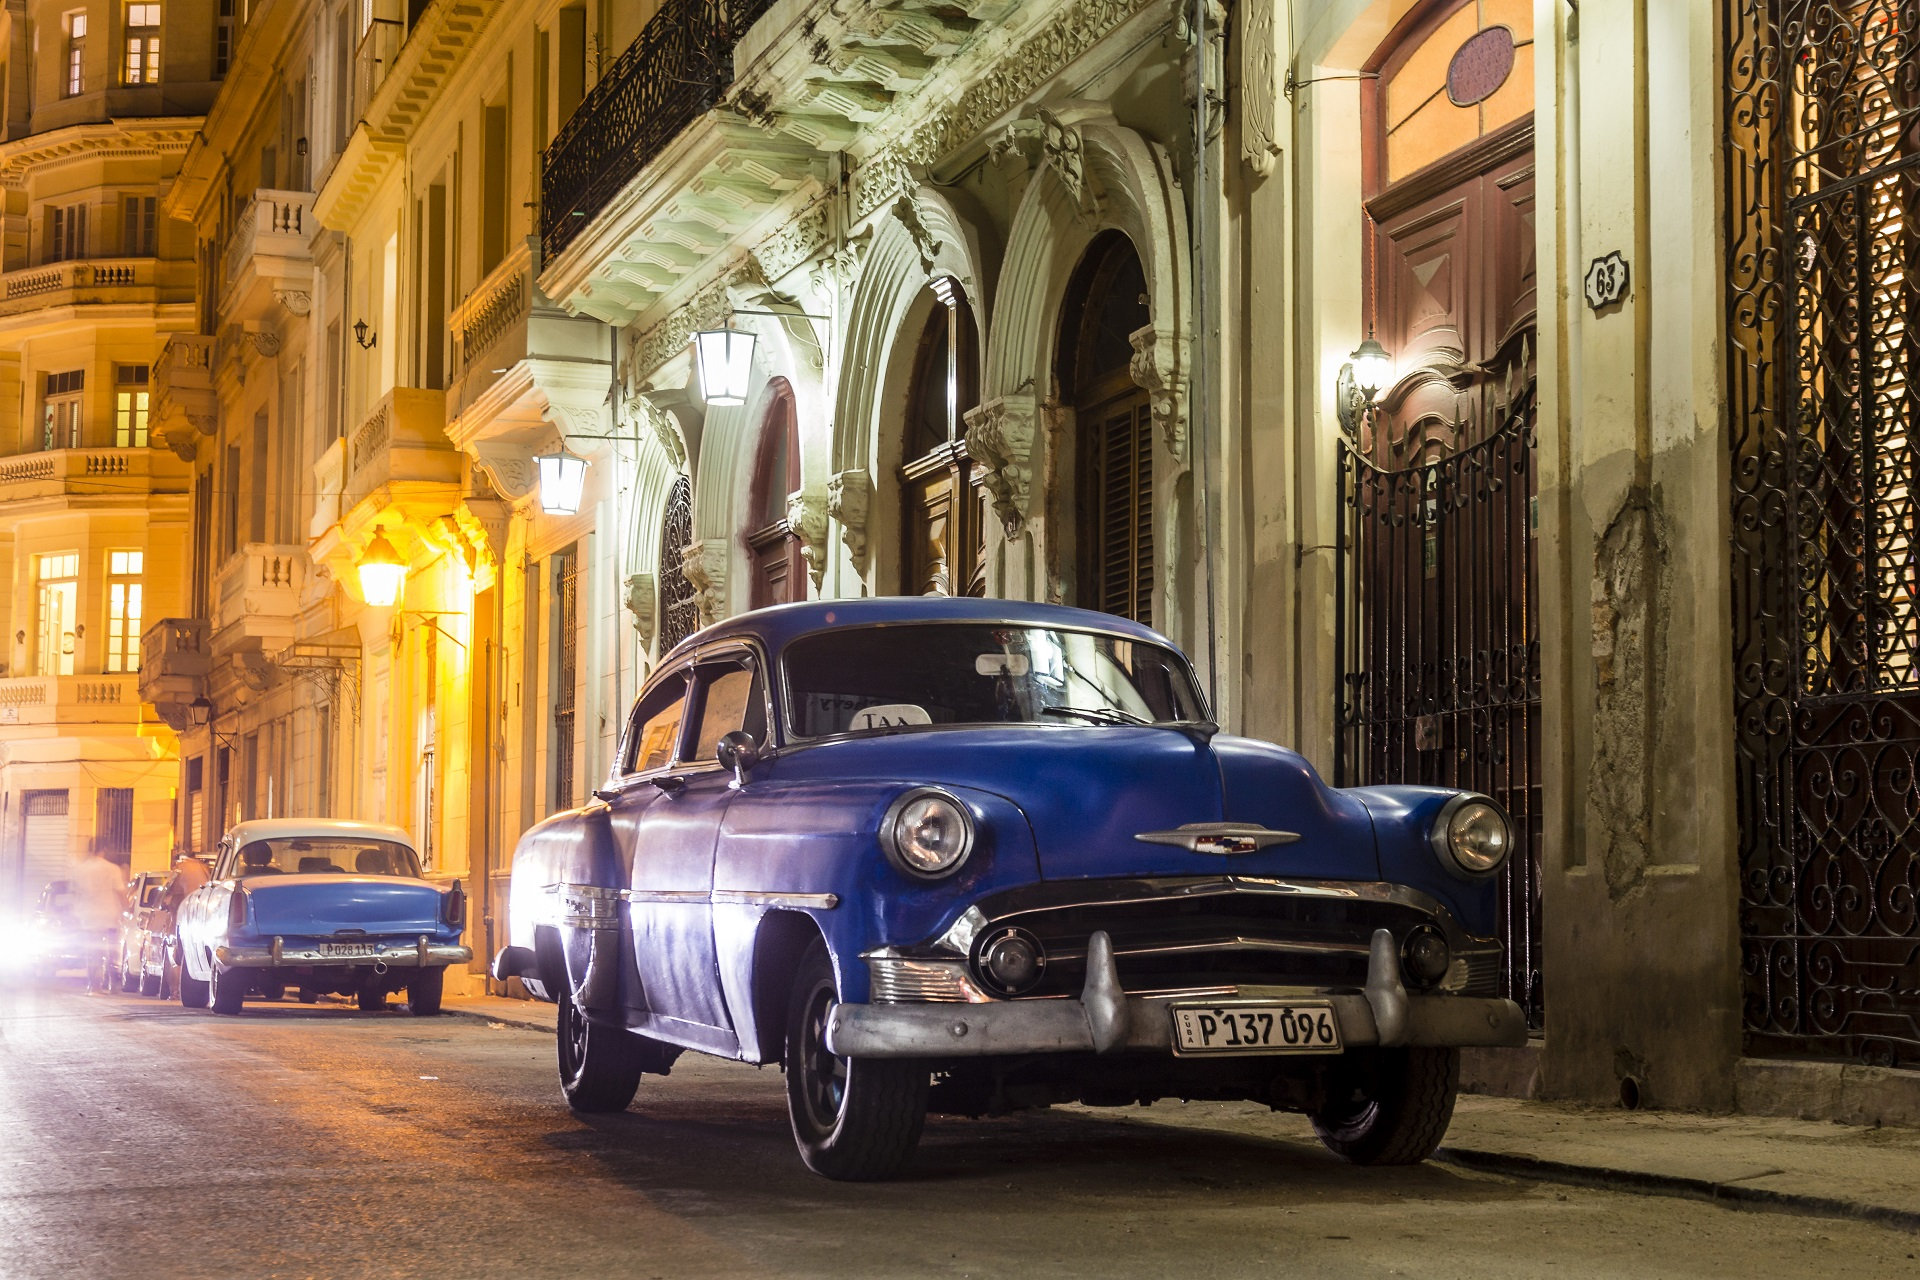 Cuba for Connoisseurs